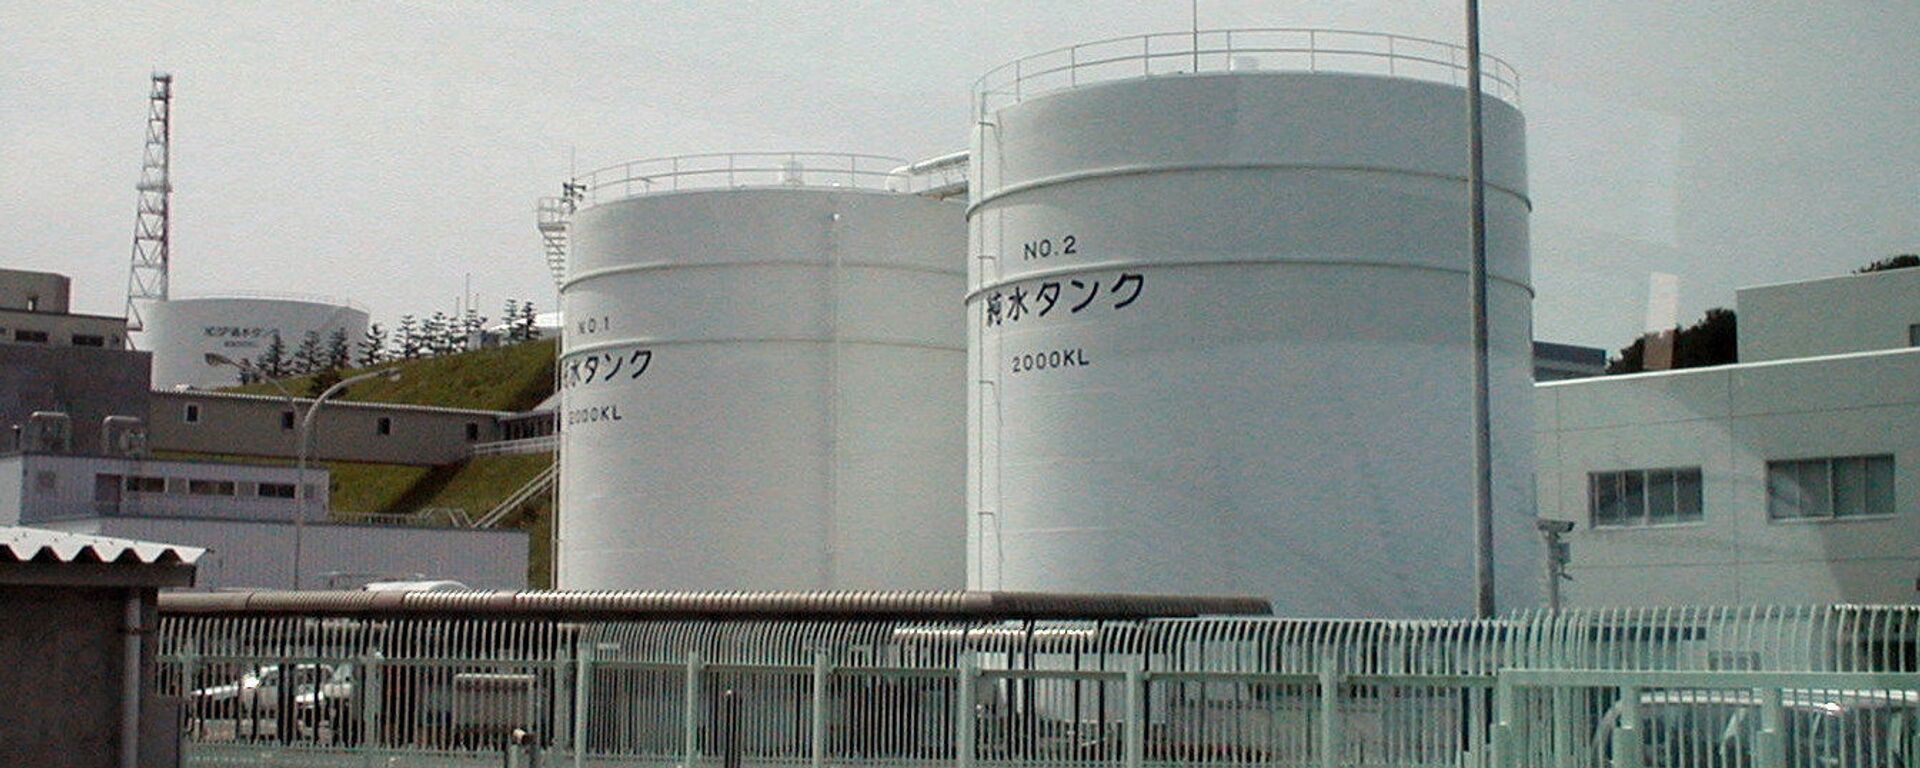 Nhà máy điện hạt nhân Fukushima-1 tại Nhật Bản được xây dựng vào những năm 1960. Vào thời điểm xảy ra thảm họa, đây là một trong những nhà máy vận hành lâu đời nhất, không có hệ thống an toàn chủ động và thụ động, như các nhà máy hiện đại. - Sputnik Việt Nam, 1920, 23.08.2023